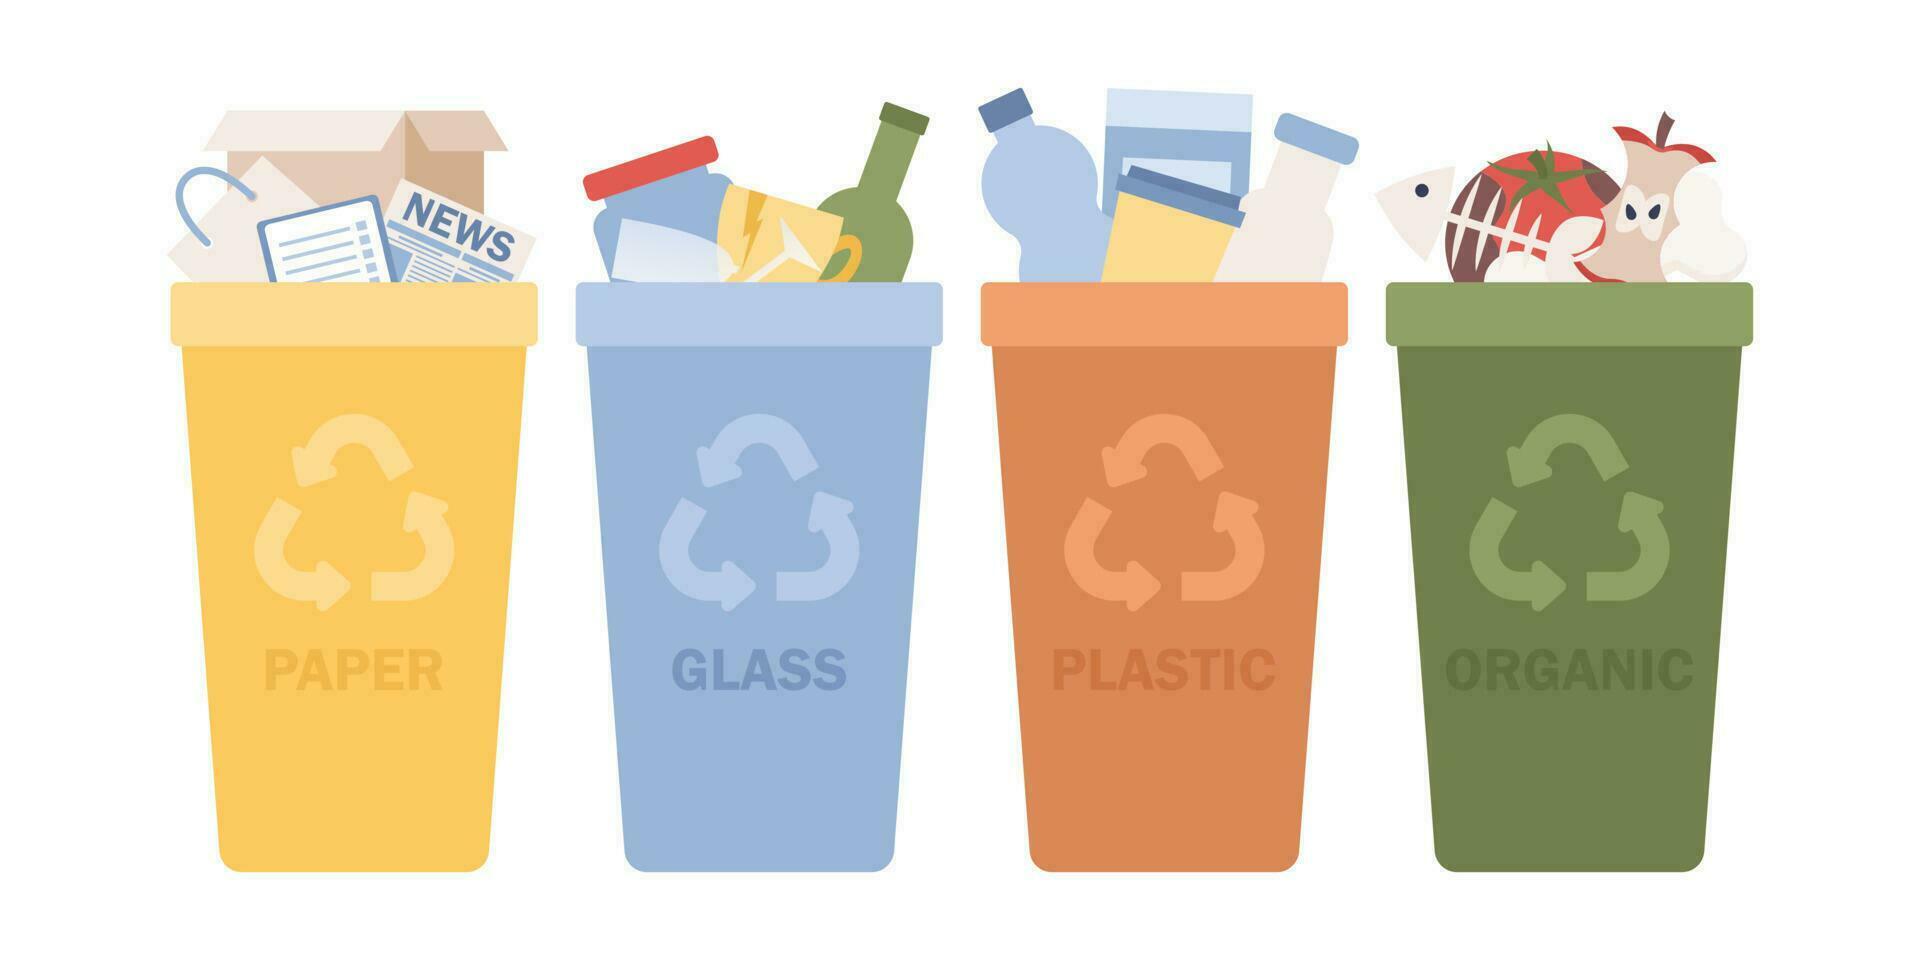 clasificación basura desperdiciar. reciclaje basura. papel, vaso, el plastico, orgánico basura en contenedores ambiental proteccion, ecología, salvar naturaleza. vector plano ilustración